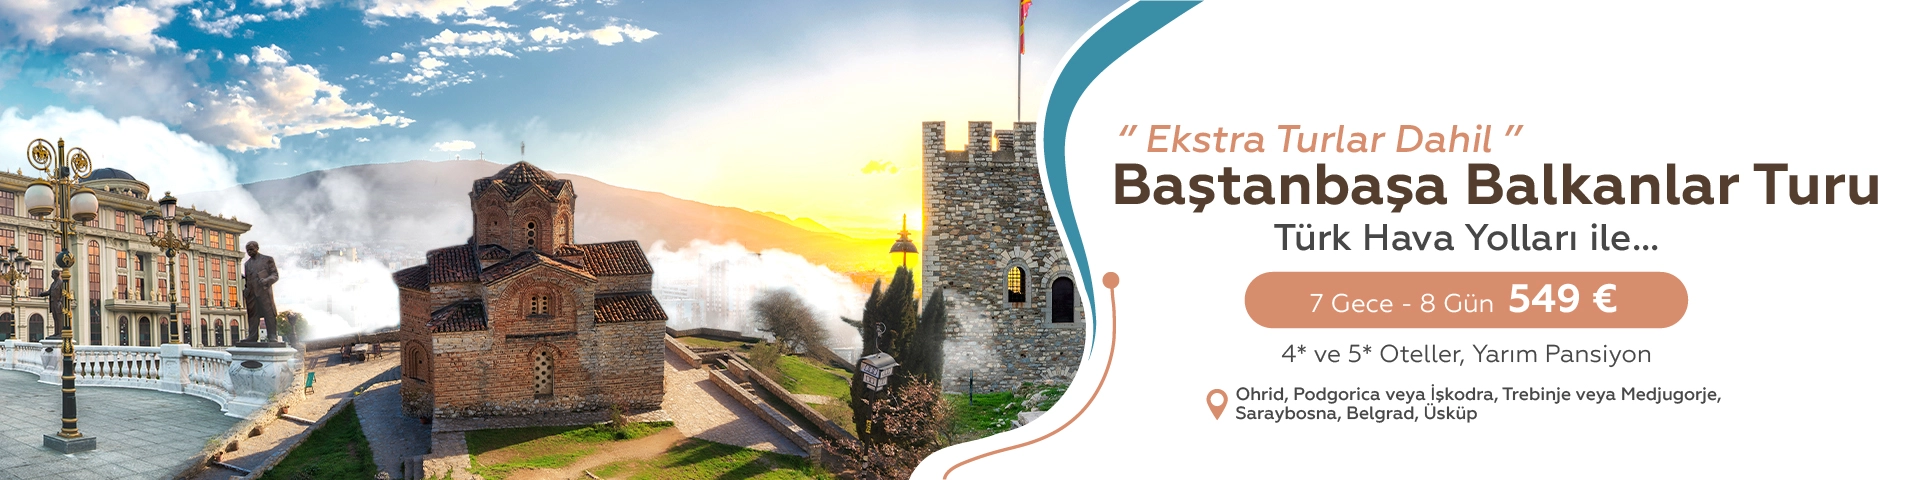 Baştanbaşa Balkanlar Turu - Ekstra Turlar Dahil - (Beg-Skp)